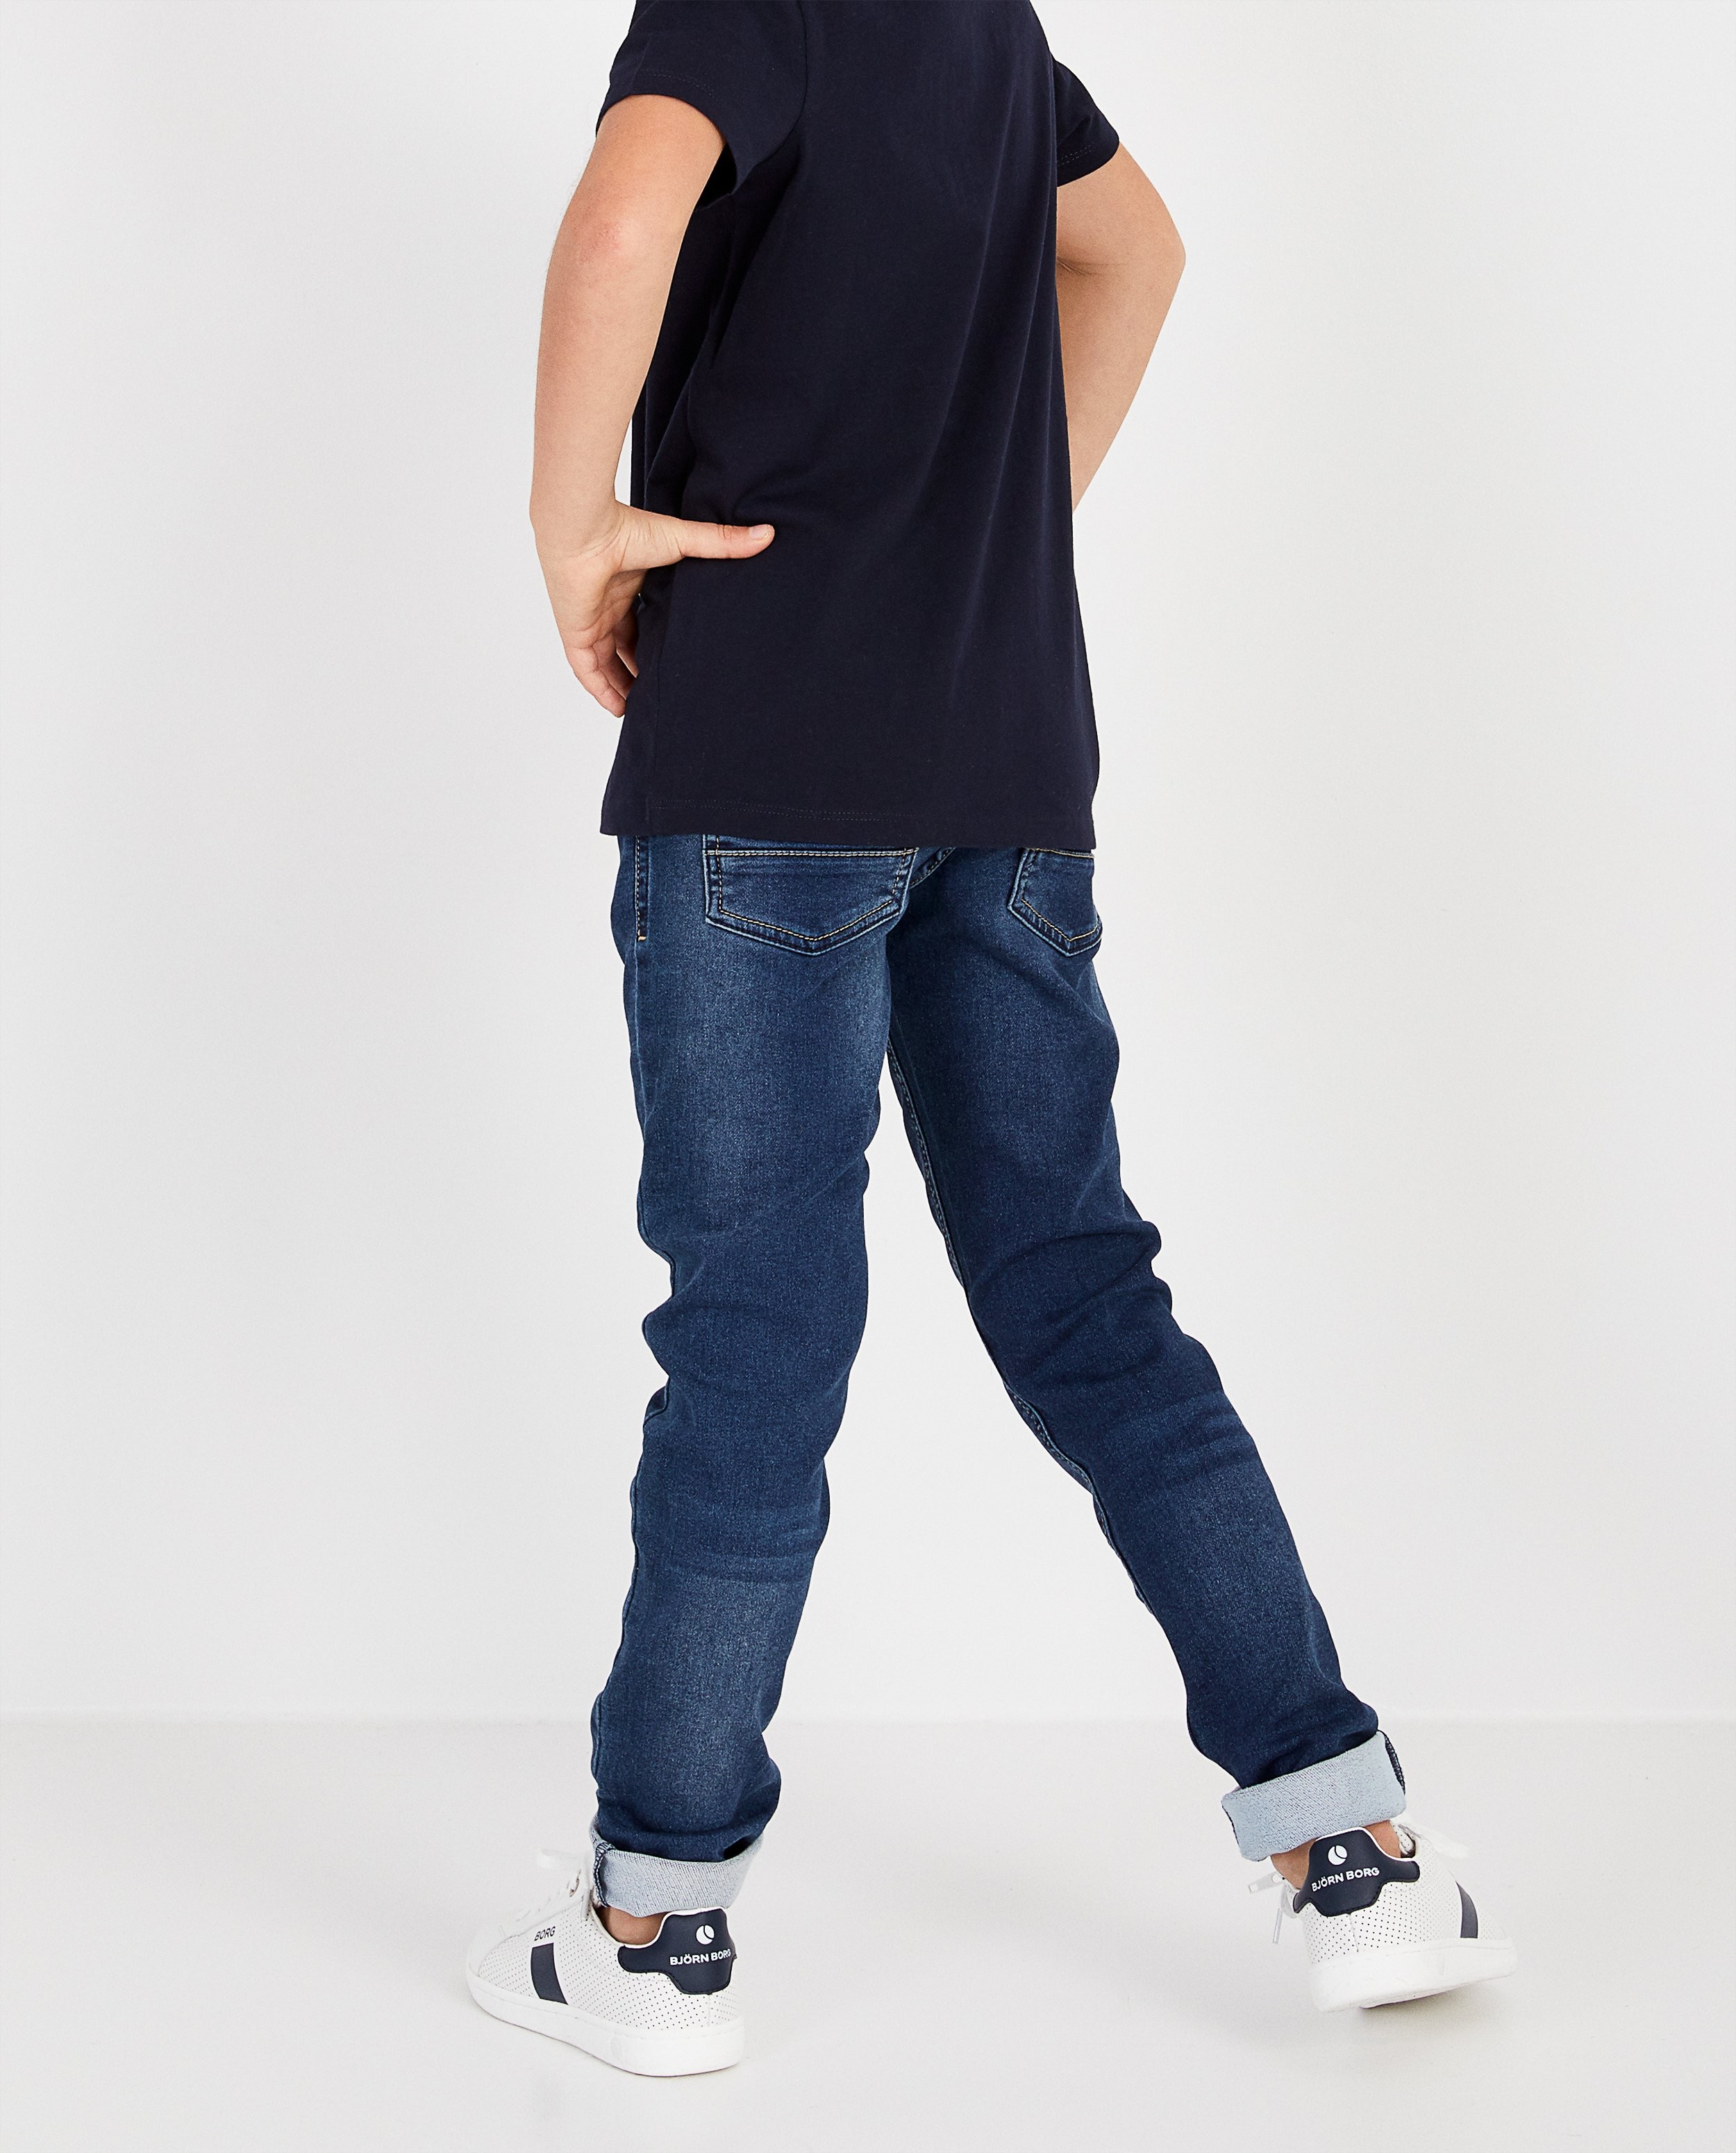 Jeans - Jeans slim gris en sweat denim Simon, 7-14 ans